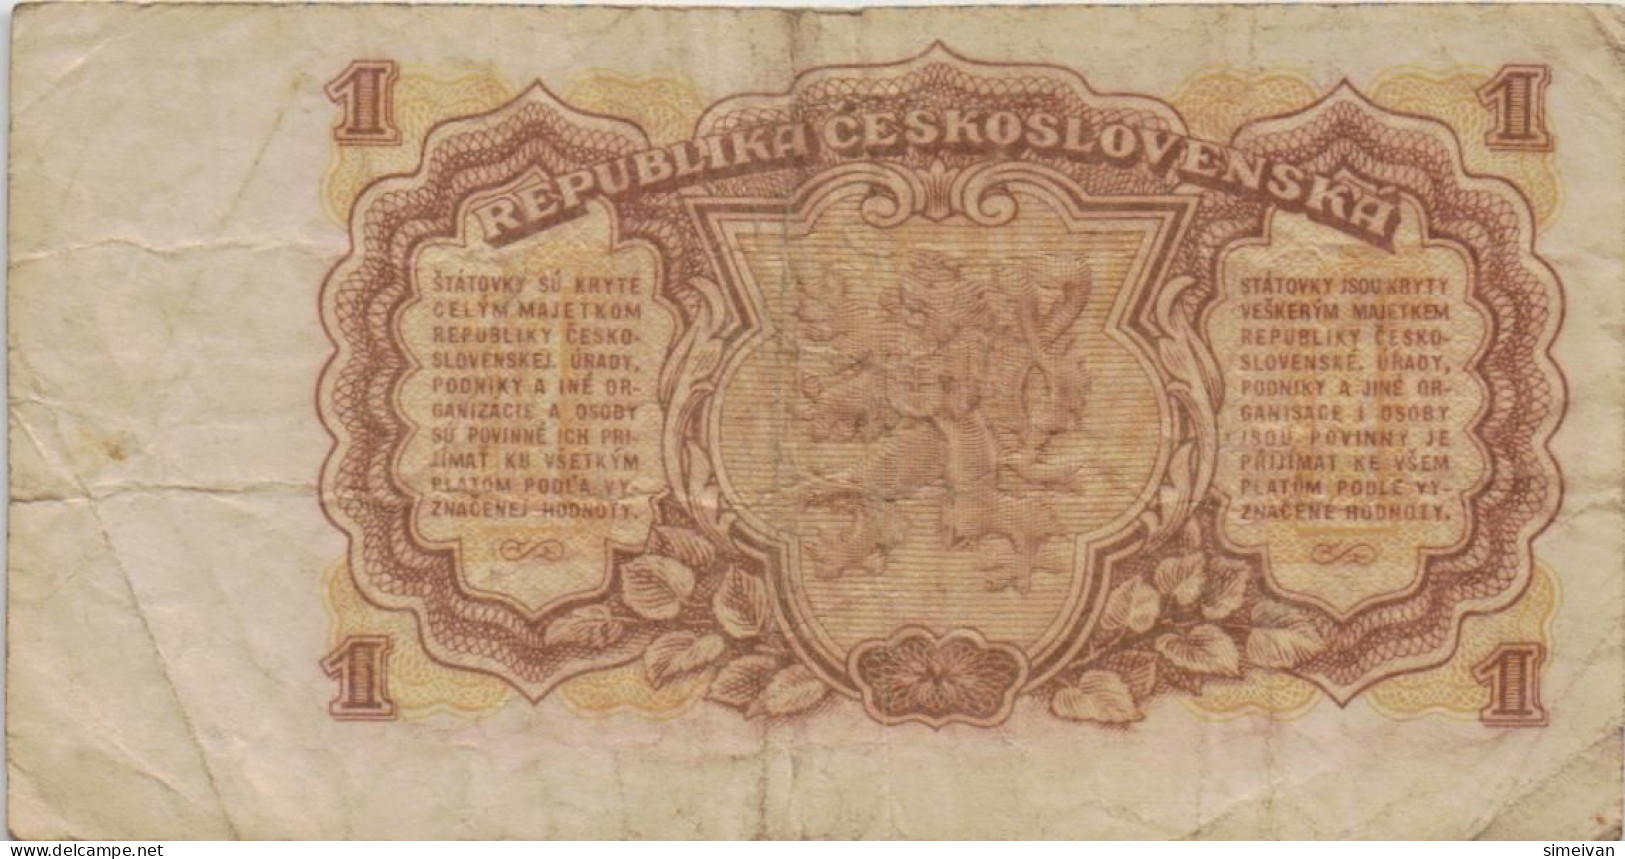 Czechoslovakia 1 Koruna 1953 P-78b Banknote Europe Currency Tchécoslovaquie Tschechoslowakei #5231 - Tsjechoslowakije